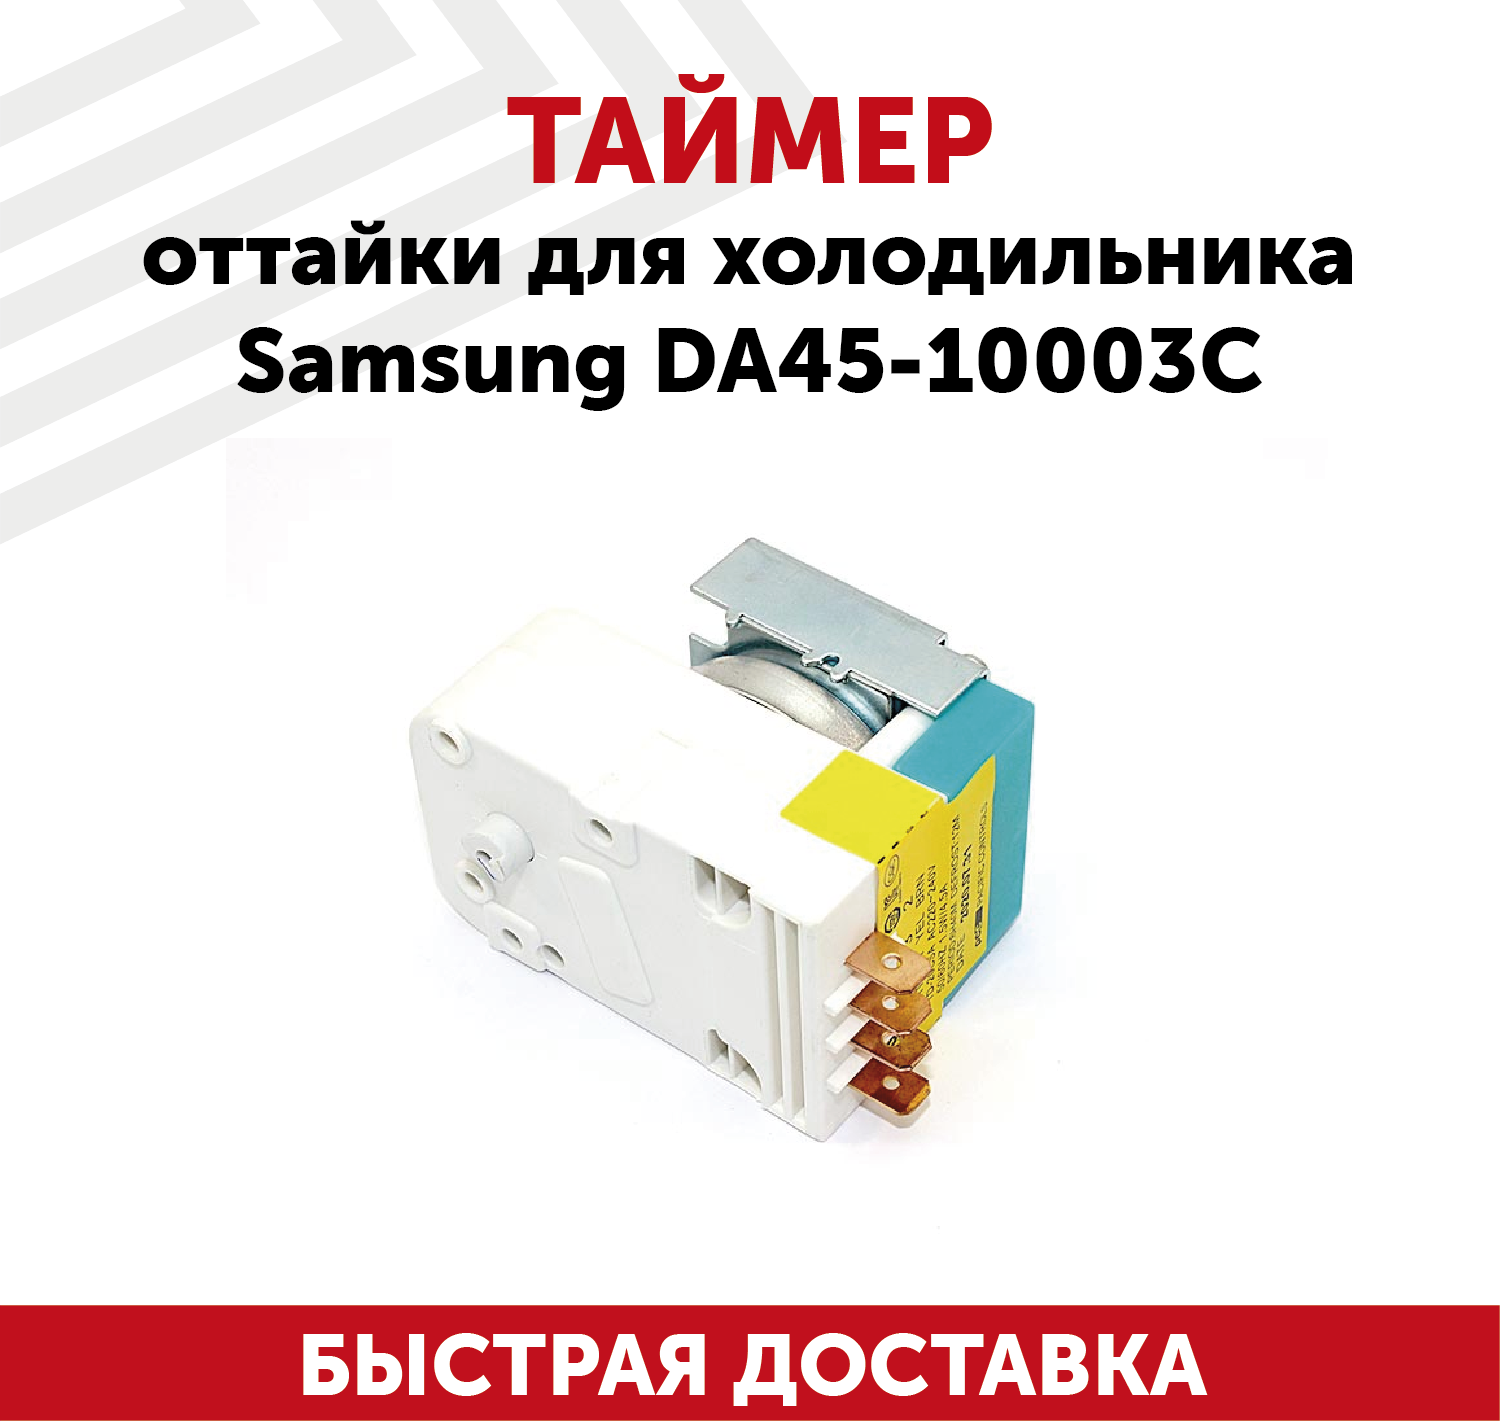 Таймер Samsung DA45-10003C